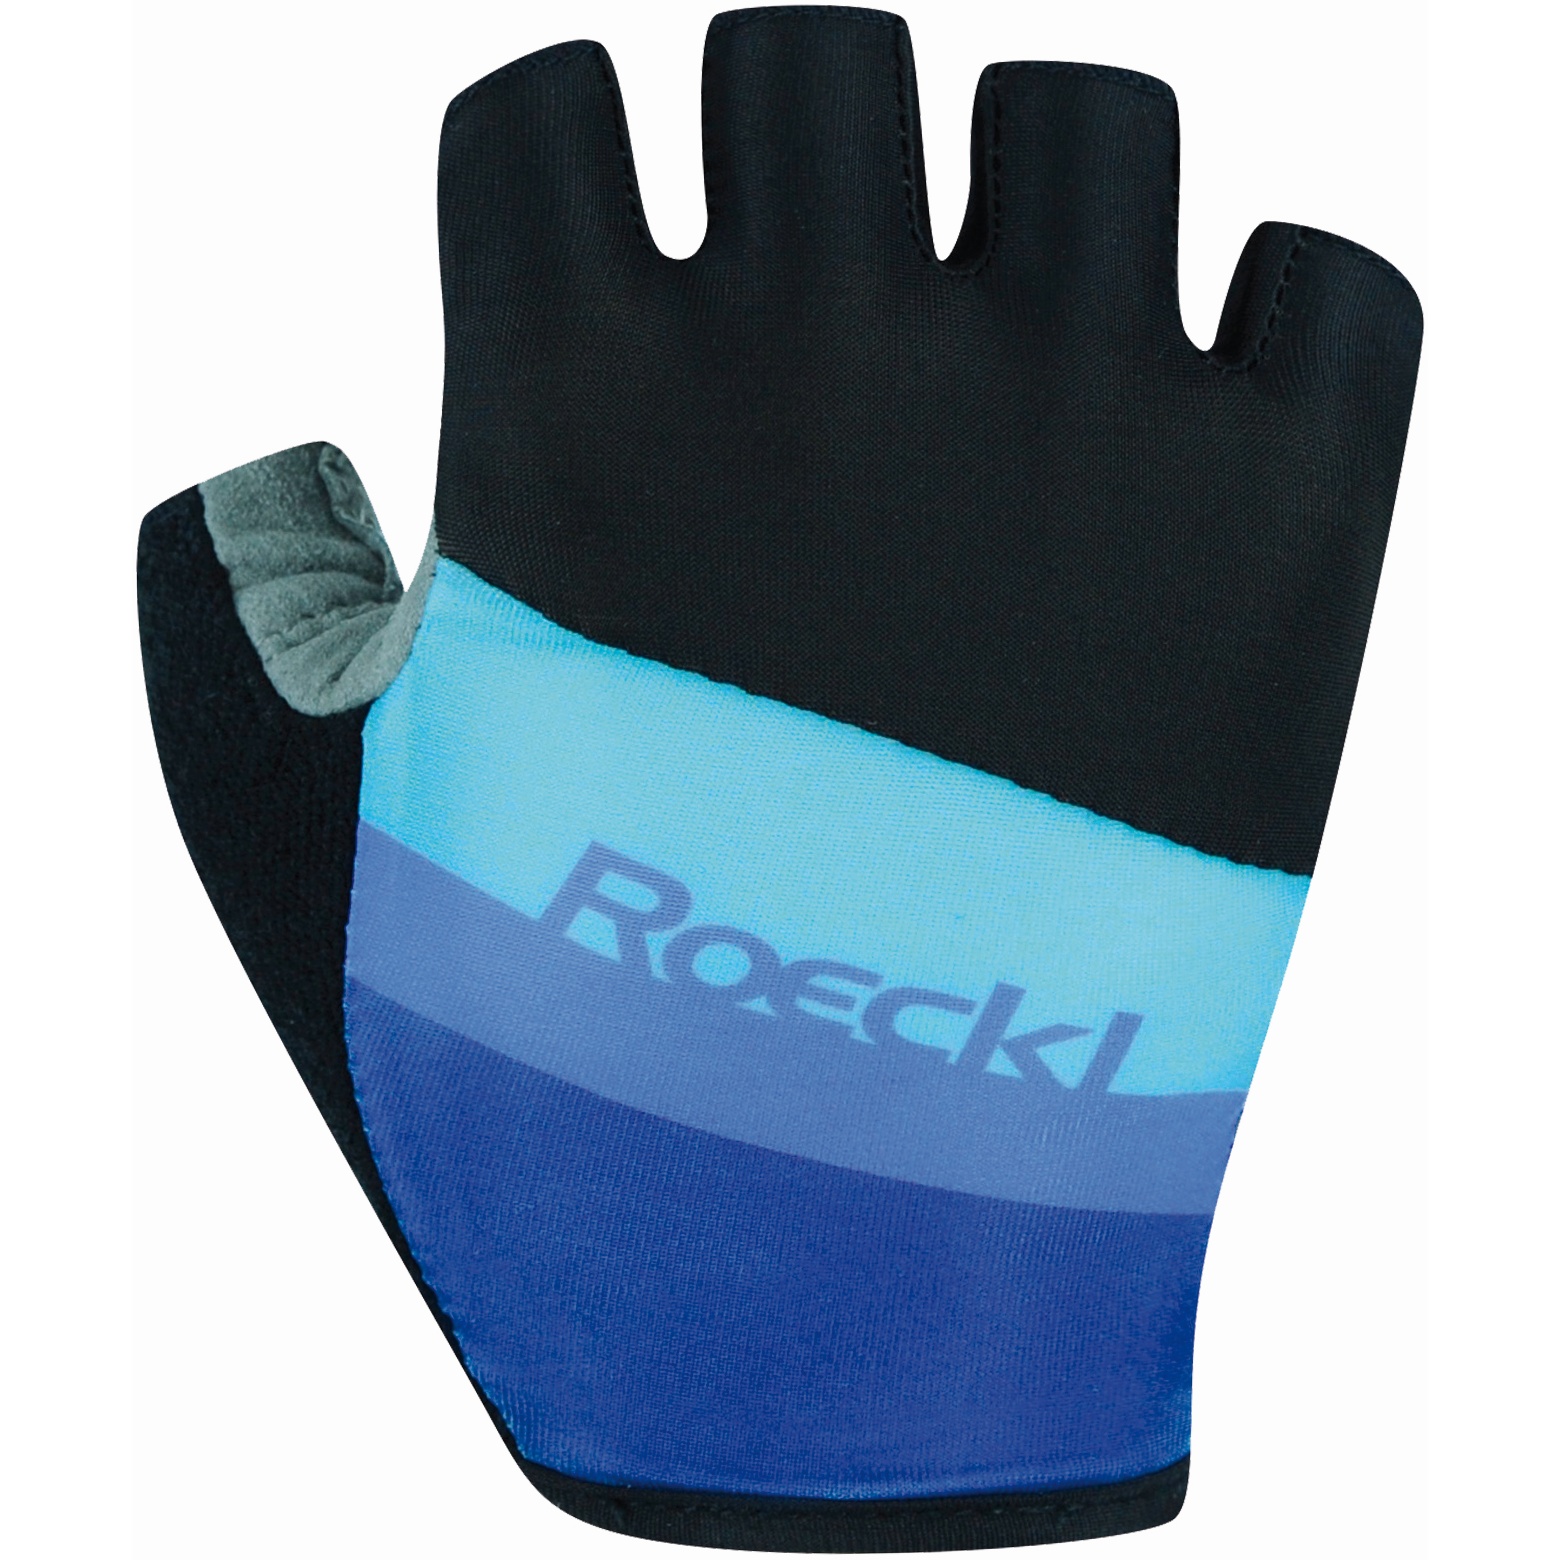 Productfoto van Roeckl Sports Ticino Kinderen Fietshandschoenen - zwart/blauw 056